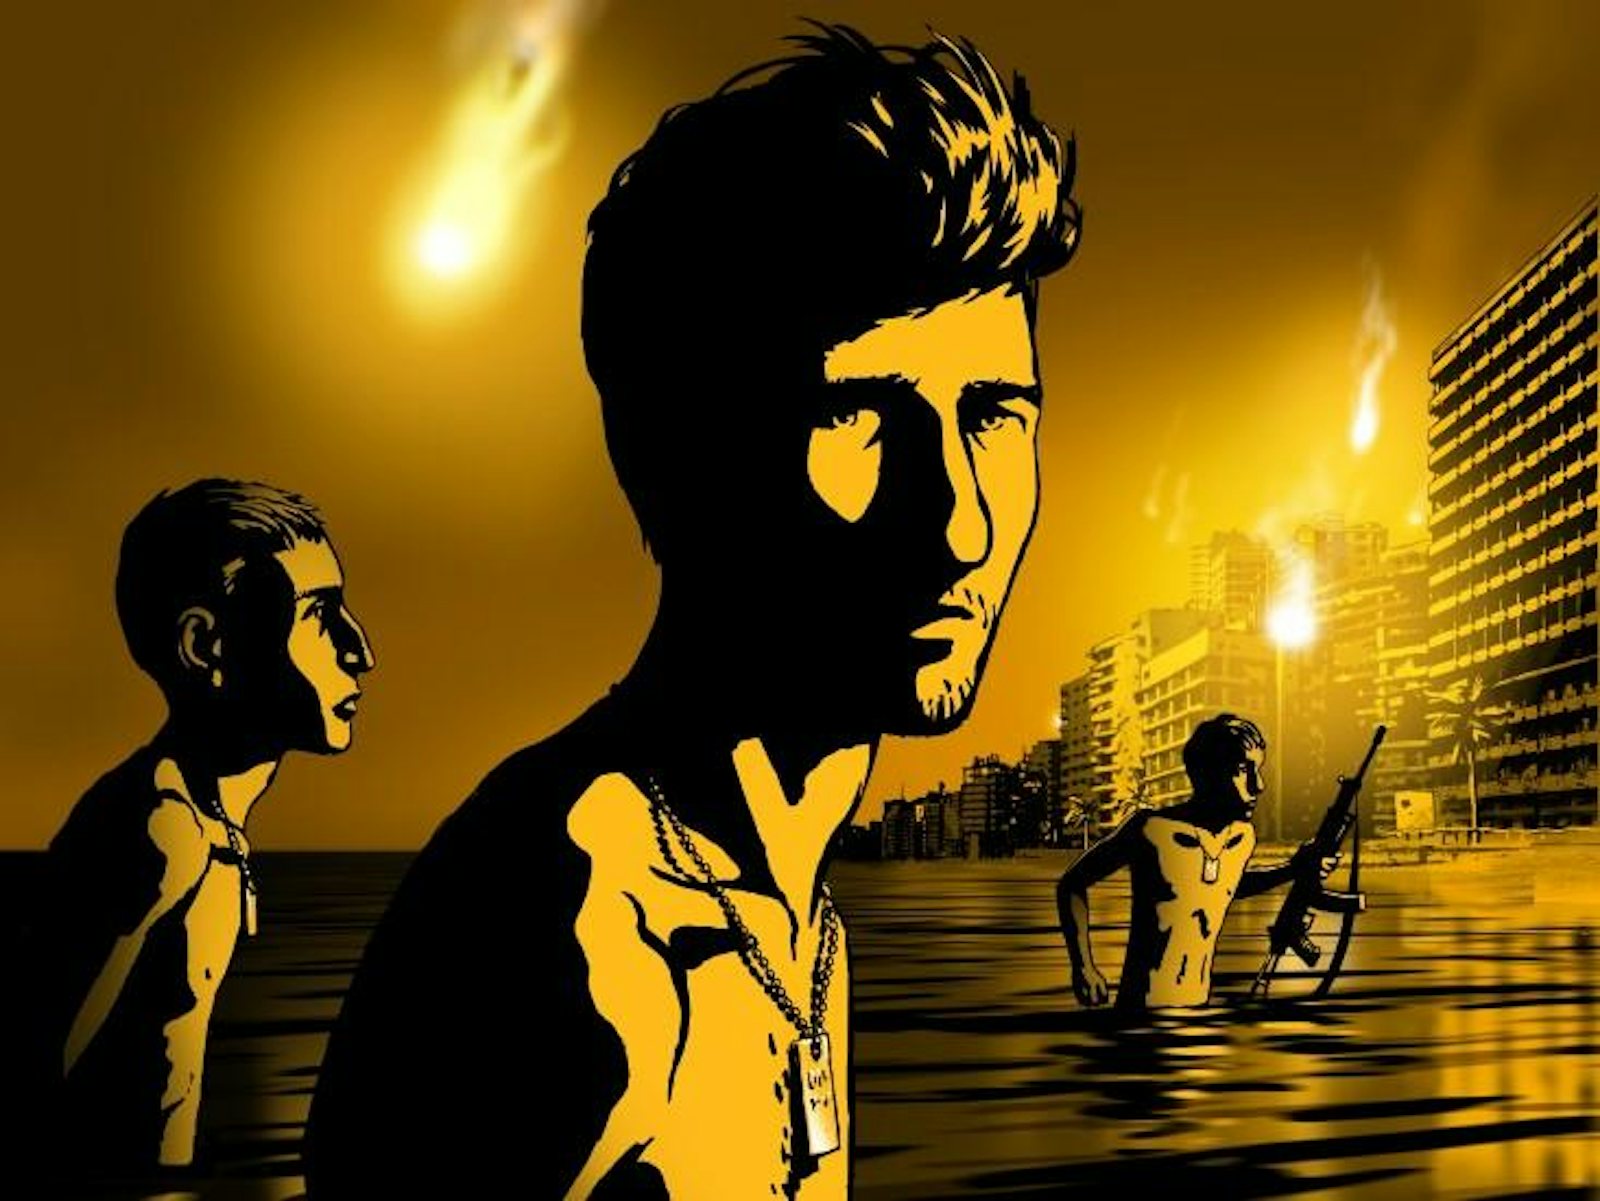 Waltz With Bashir flares